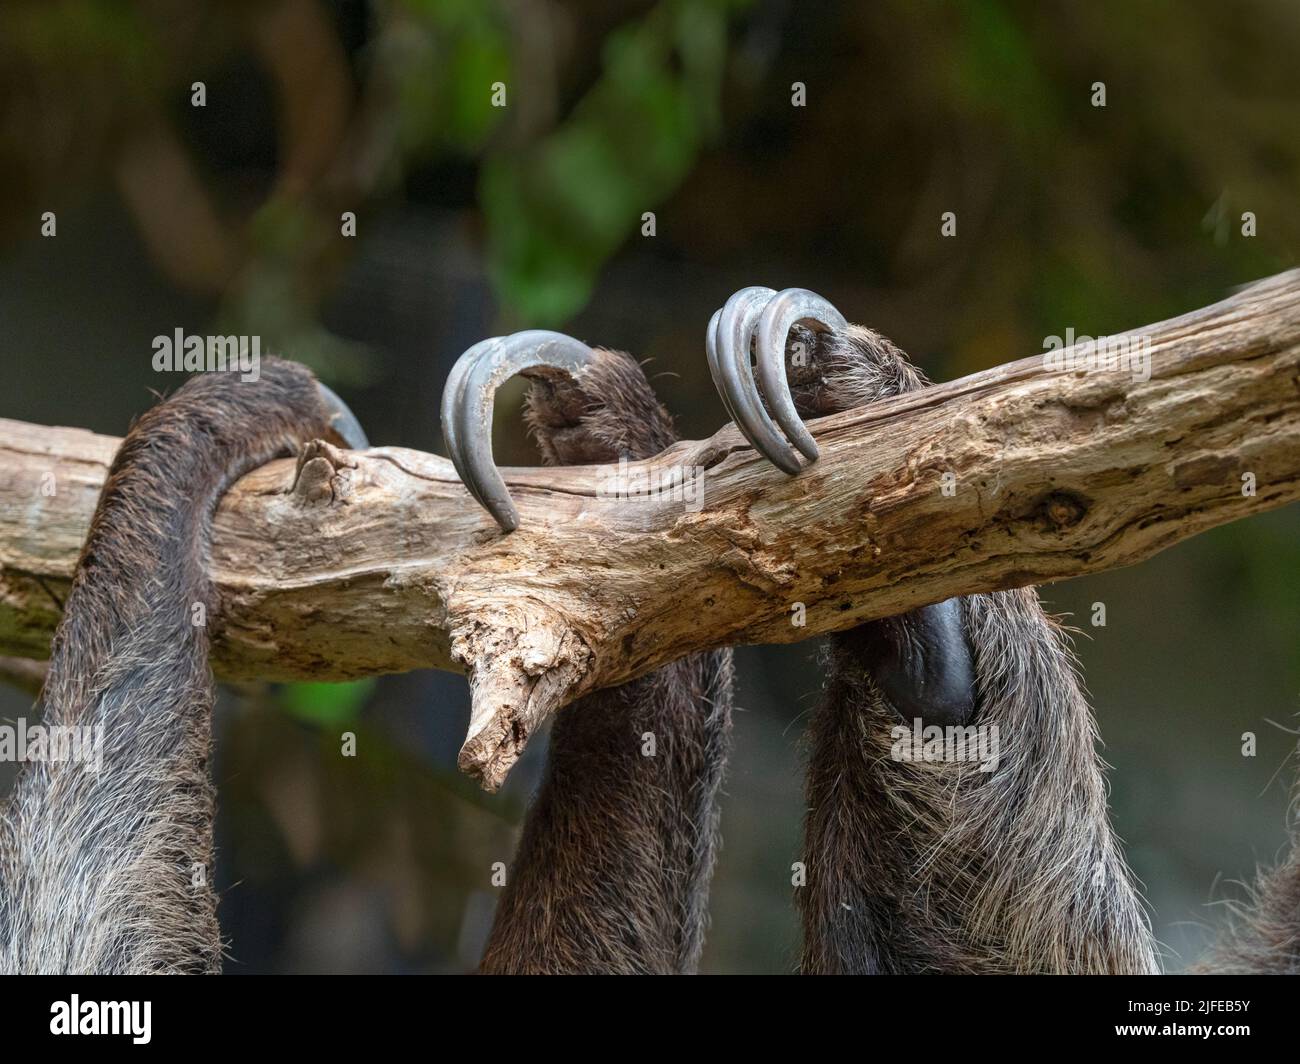 La sloth à deux doigts de Linnaeus Choloepus didactylus, également connue sous le nom de sloth à deux doigts du sud Banque D'Images